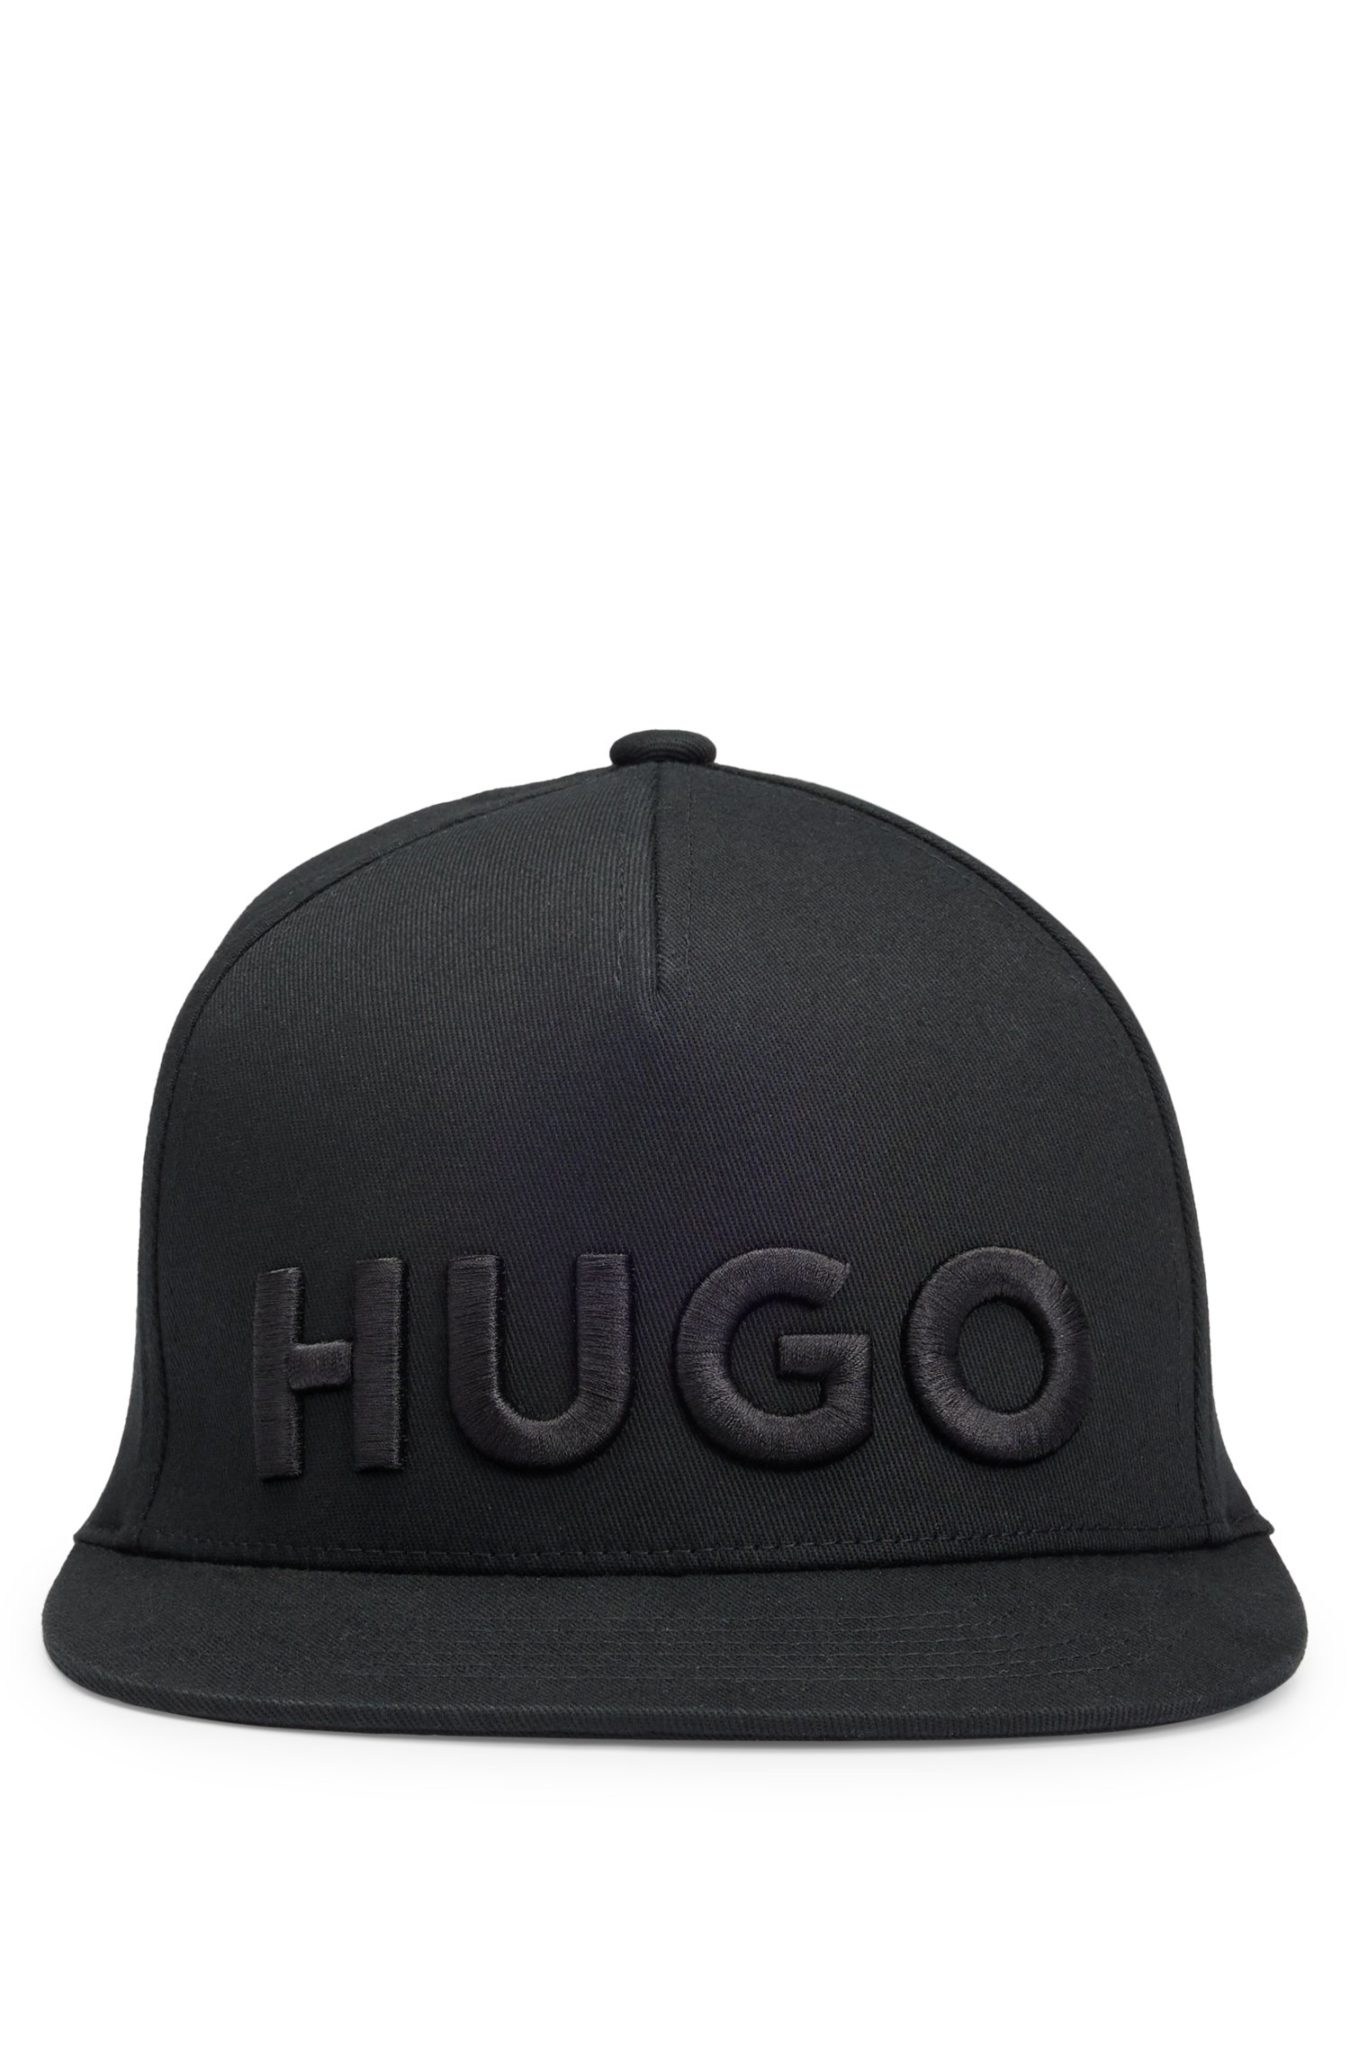 Hugo Boss Casquette en coton stretch Flexfit® avec logo brodé en 3D